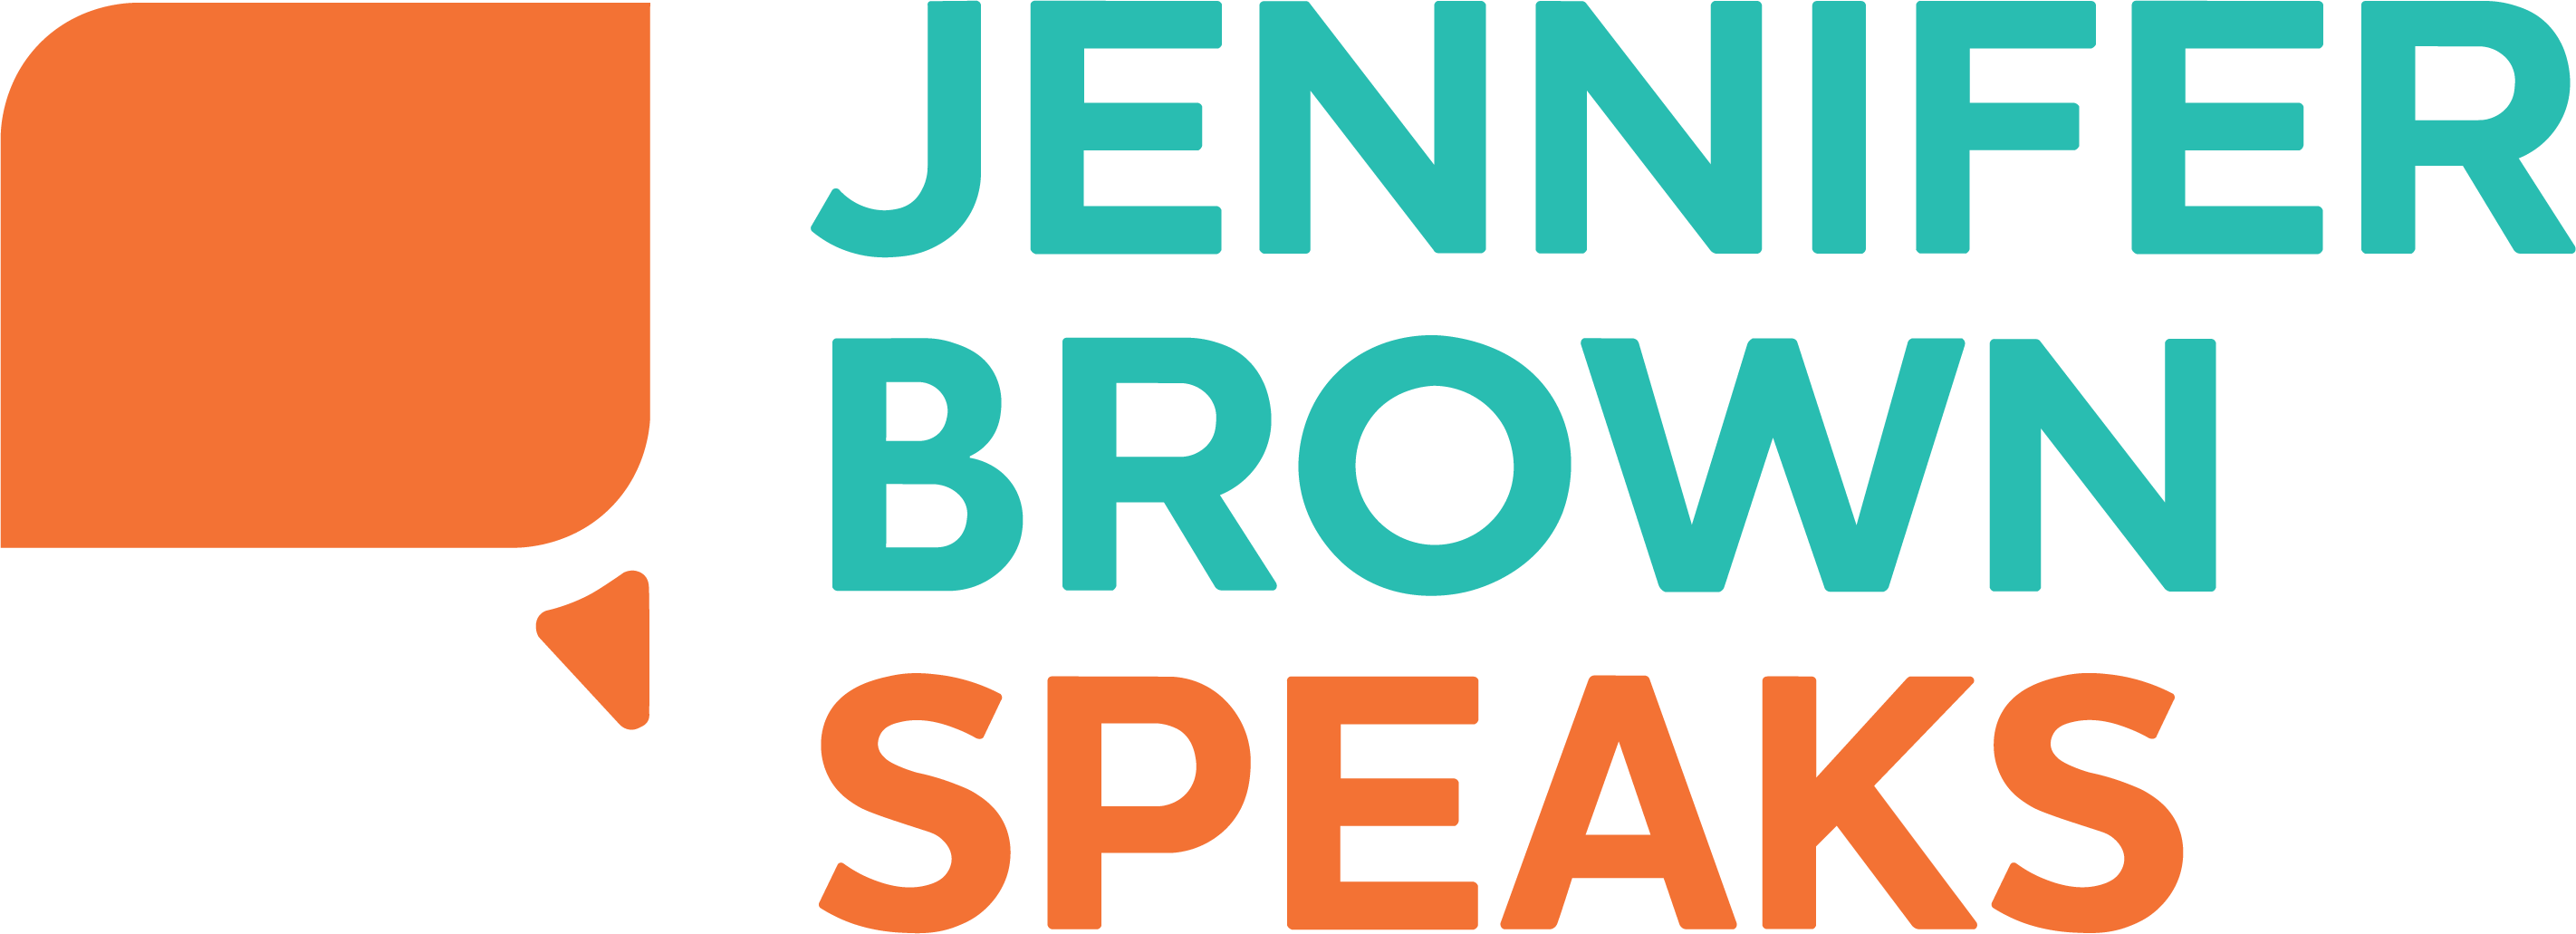 Jennifer Brown Speaks